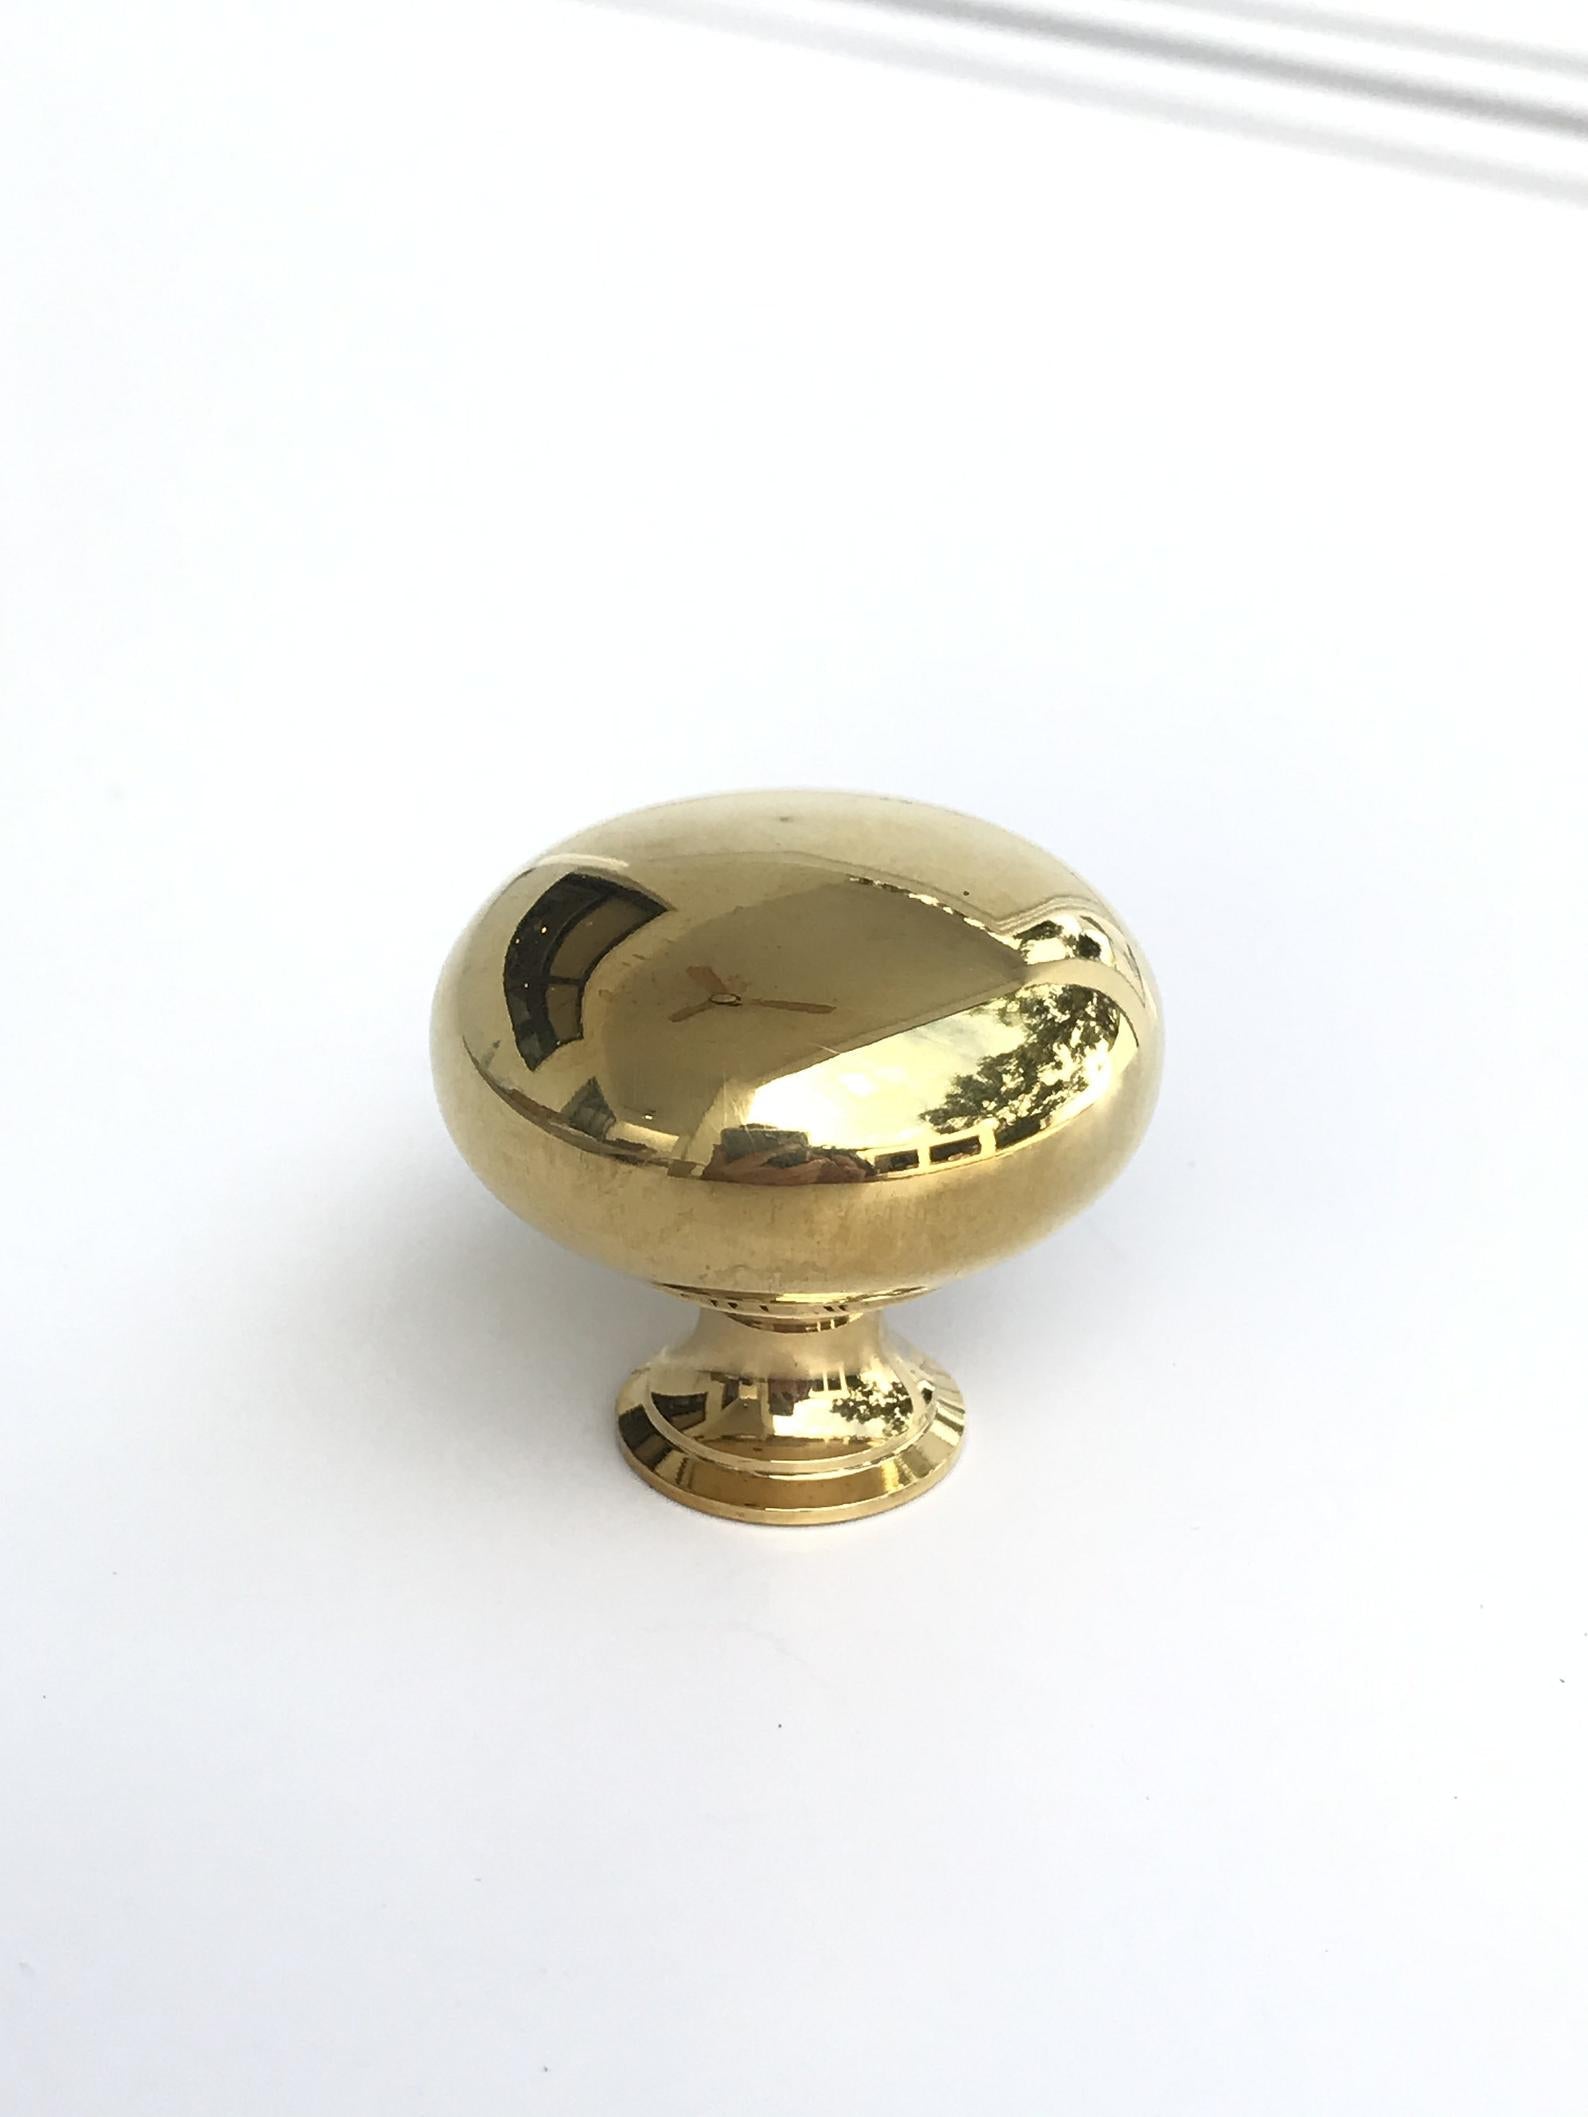 Unlacquered Brass "Eloise" Round Cabinet Knob - Kitchen Drawer Pull | Knobs